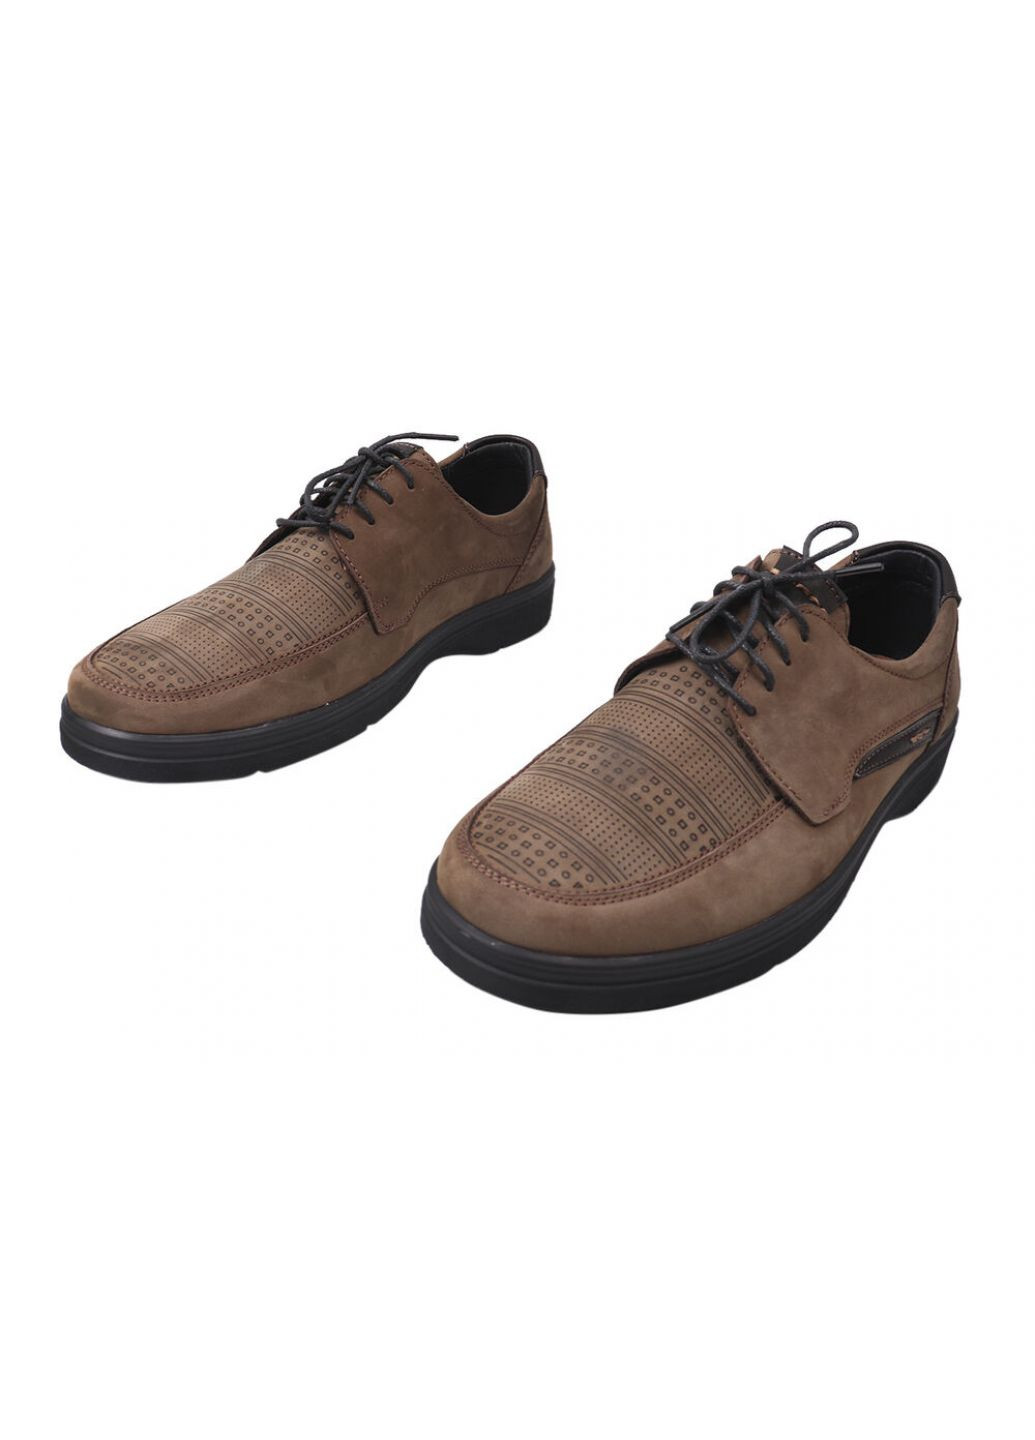 Бежевые туфли комфорт мужские из натуральной кожи (нубук), на низком ходу, на шнуровке, визон, Vadrus